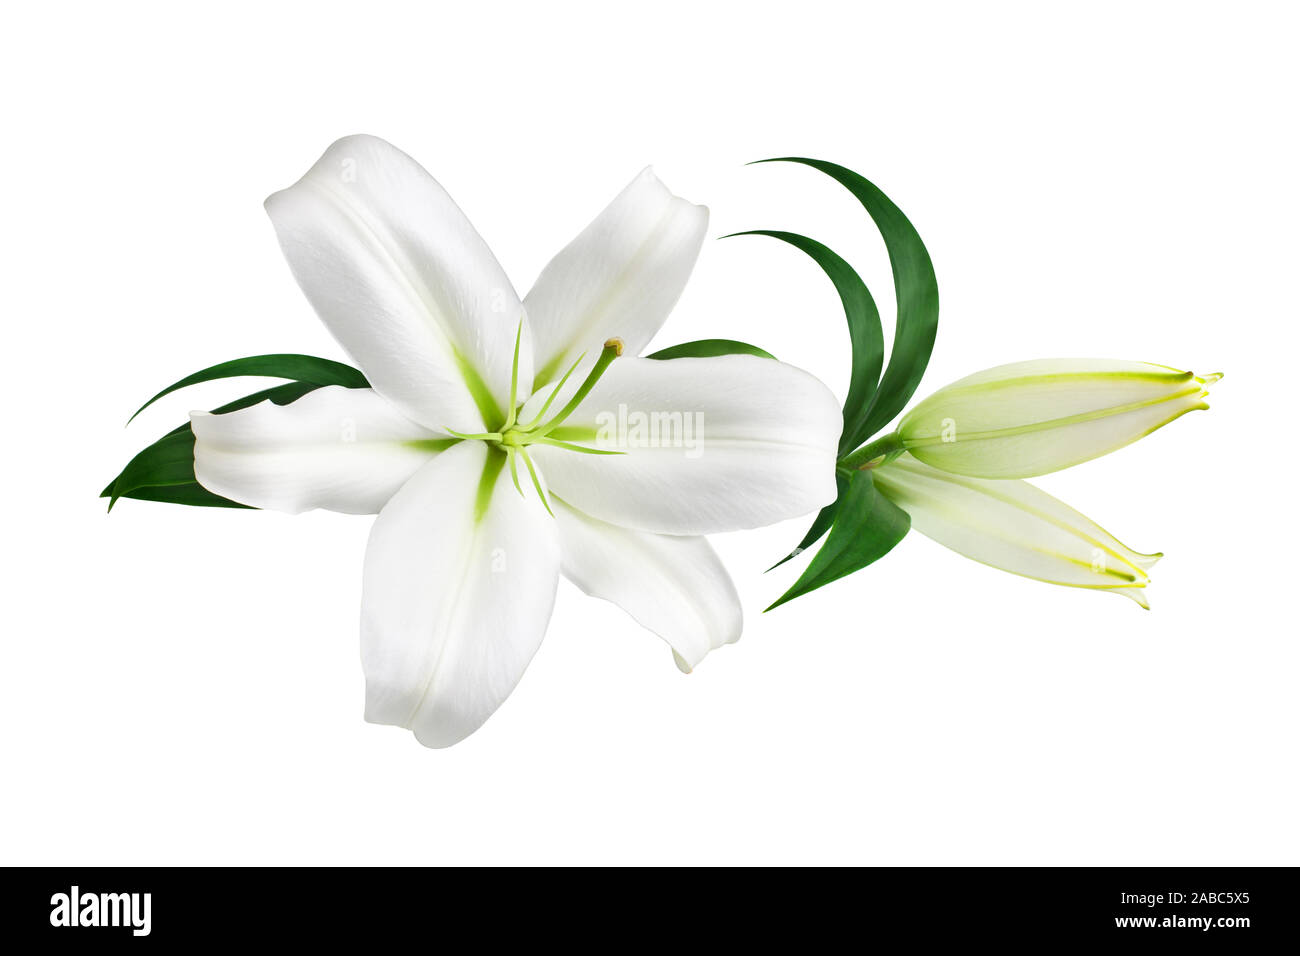 Fleur de lys symbol Banque d'images détourées - Alamy